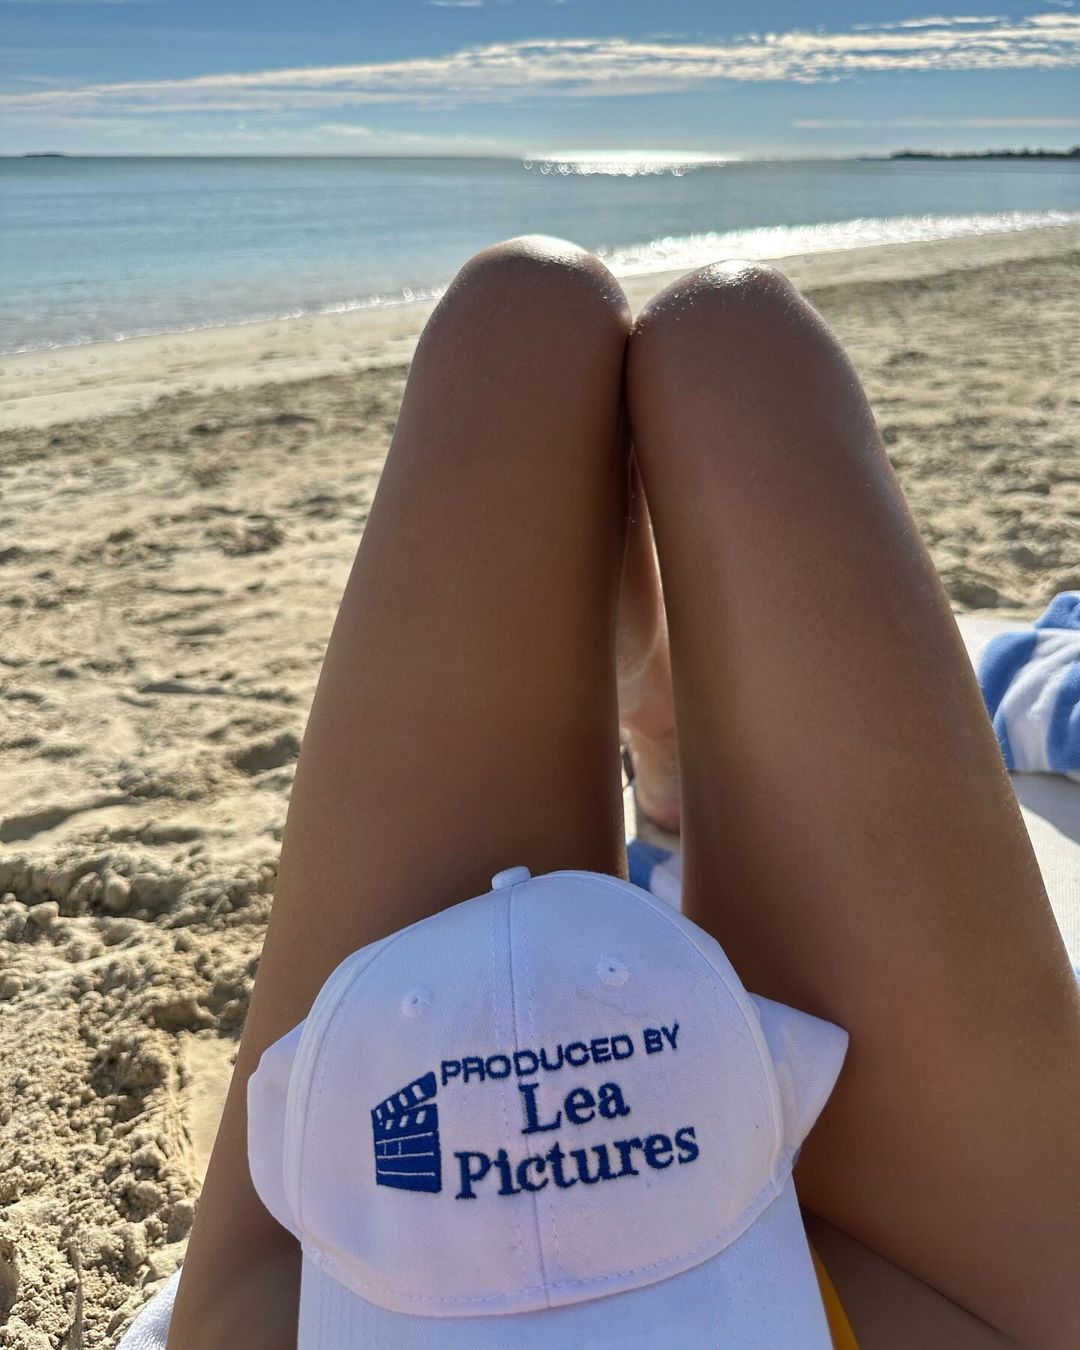 Irina Shayk is Living the Beach Life! - Photo 3